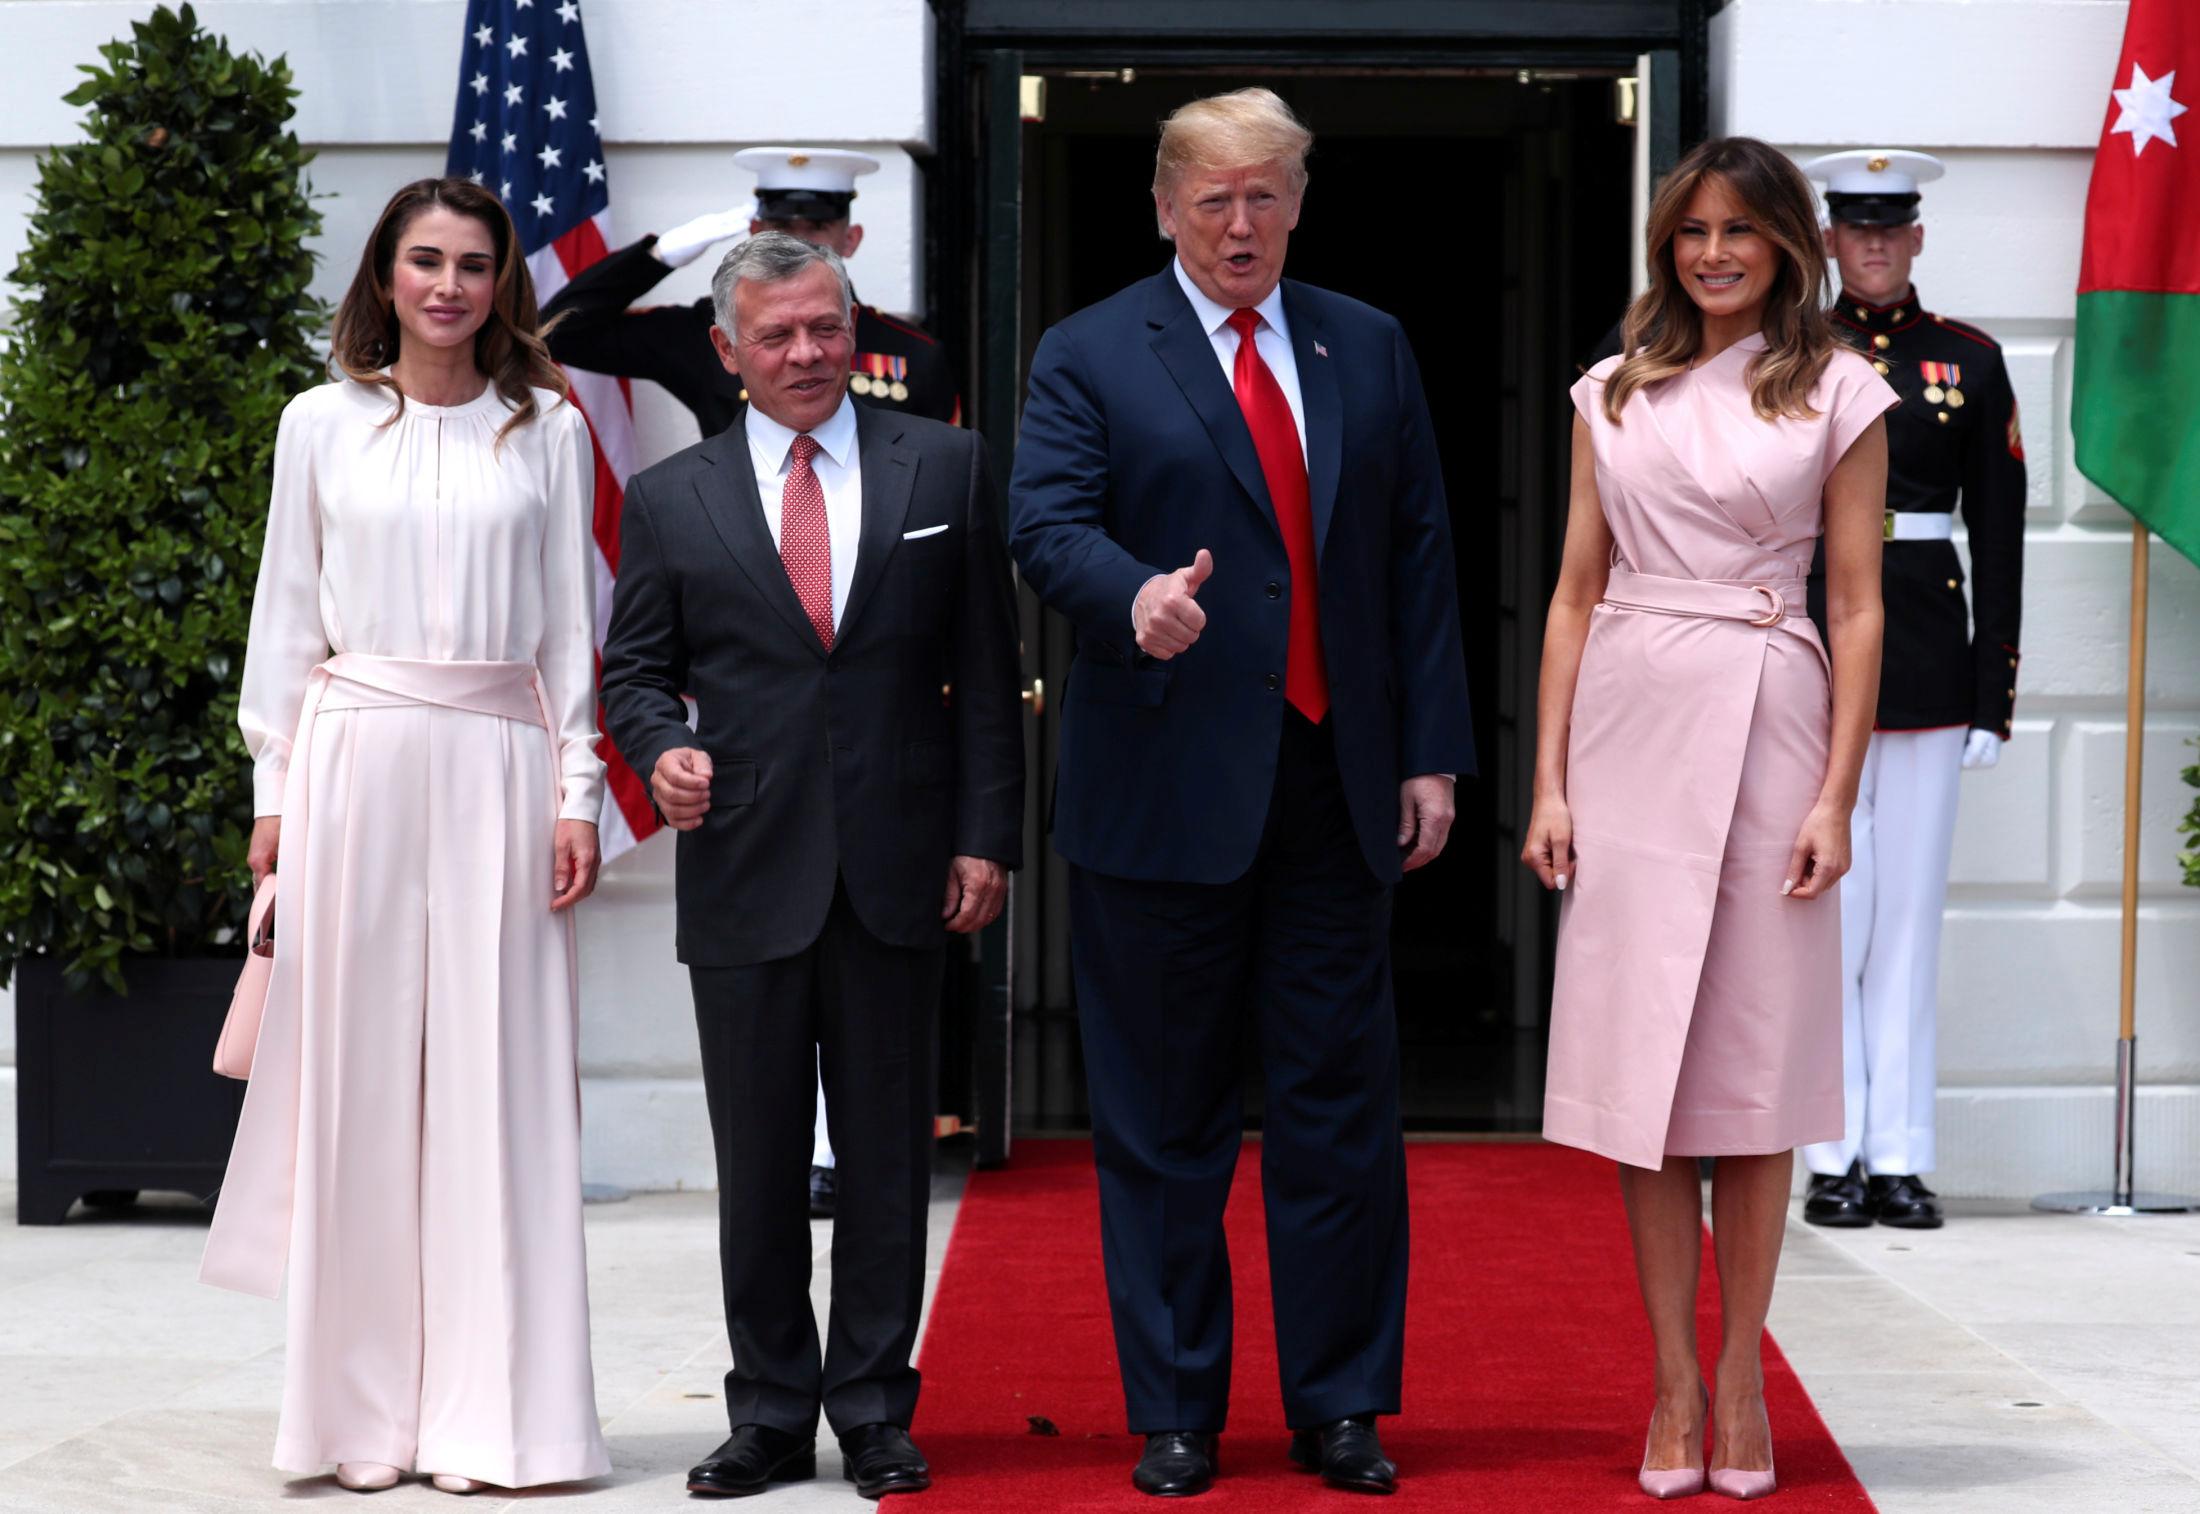 PÅ BESØK: Her er dronning Rania, kong Abdullah, president Donald Trump og førstedame Melania Trump utenfor Det hvite hus. Foto: Reuters.